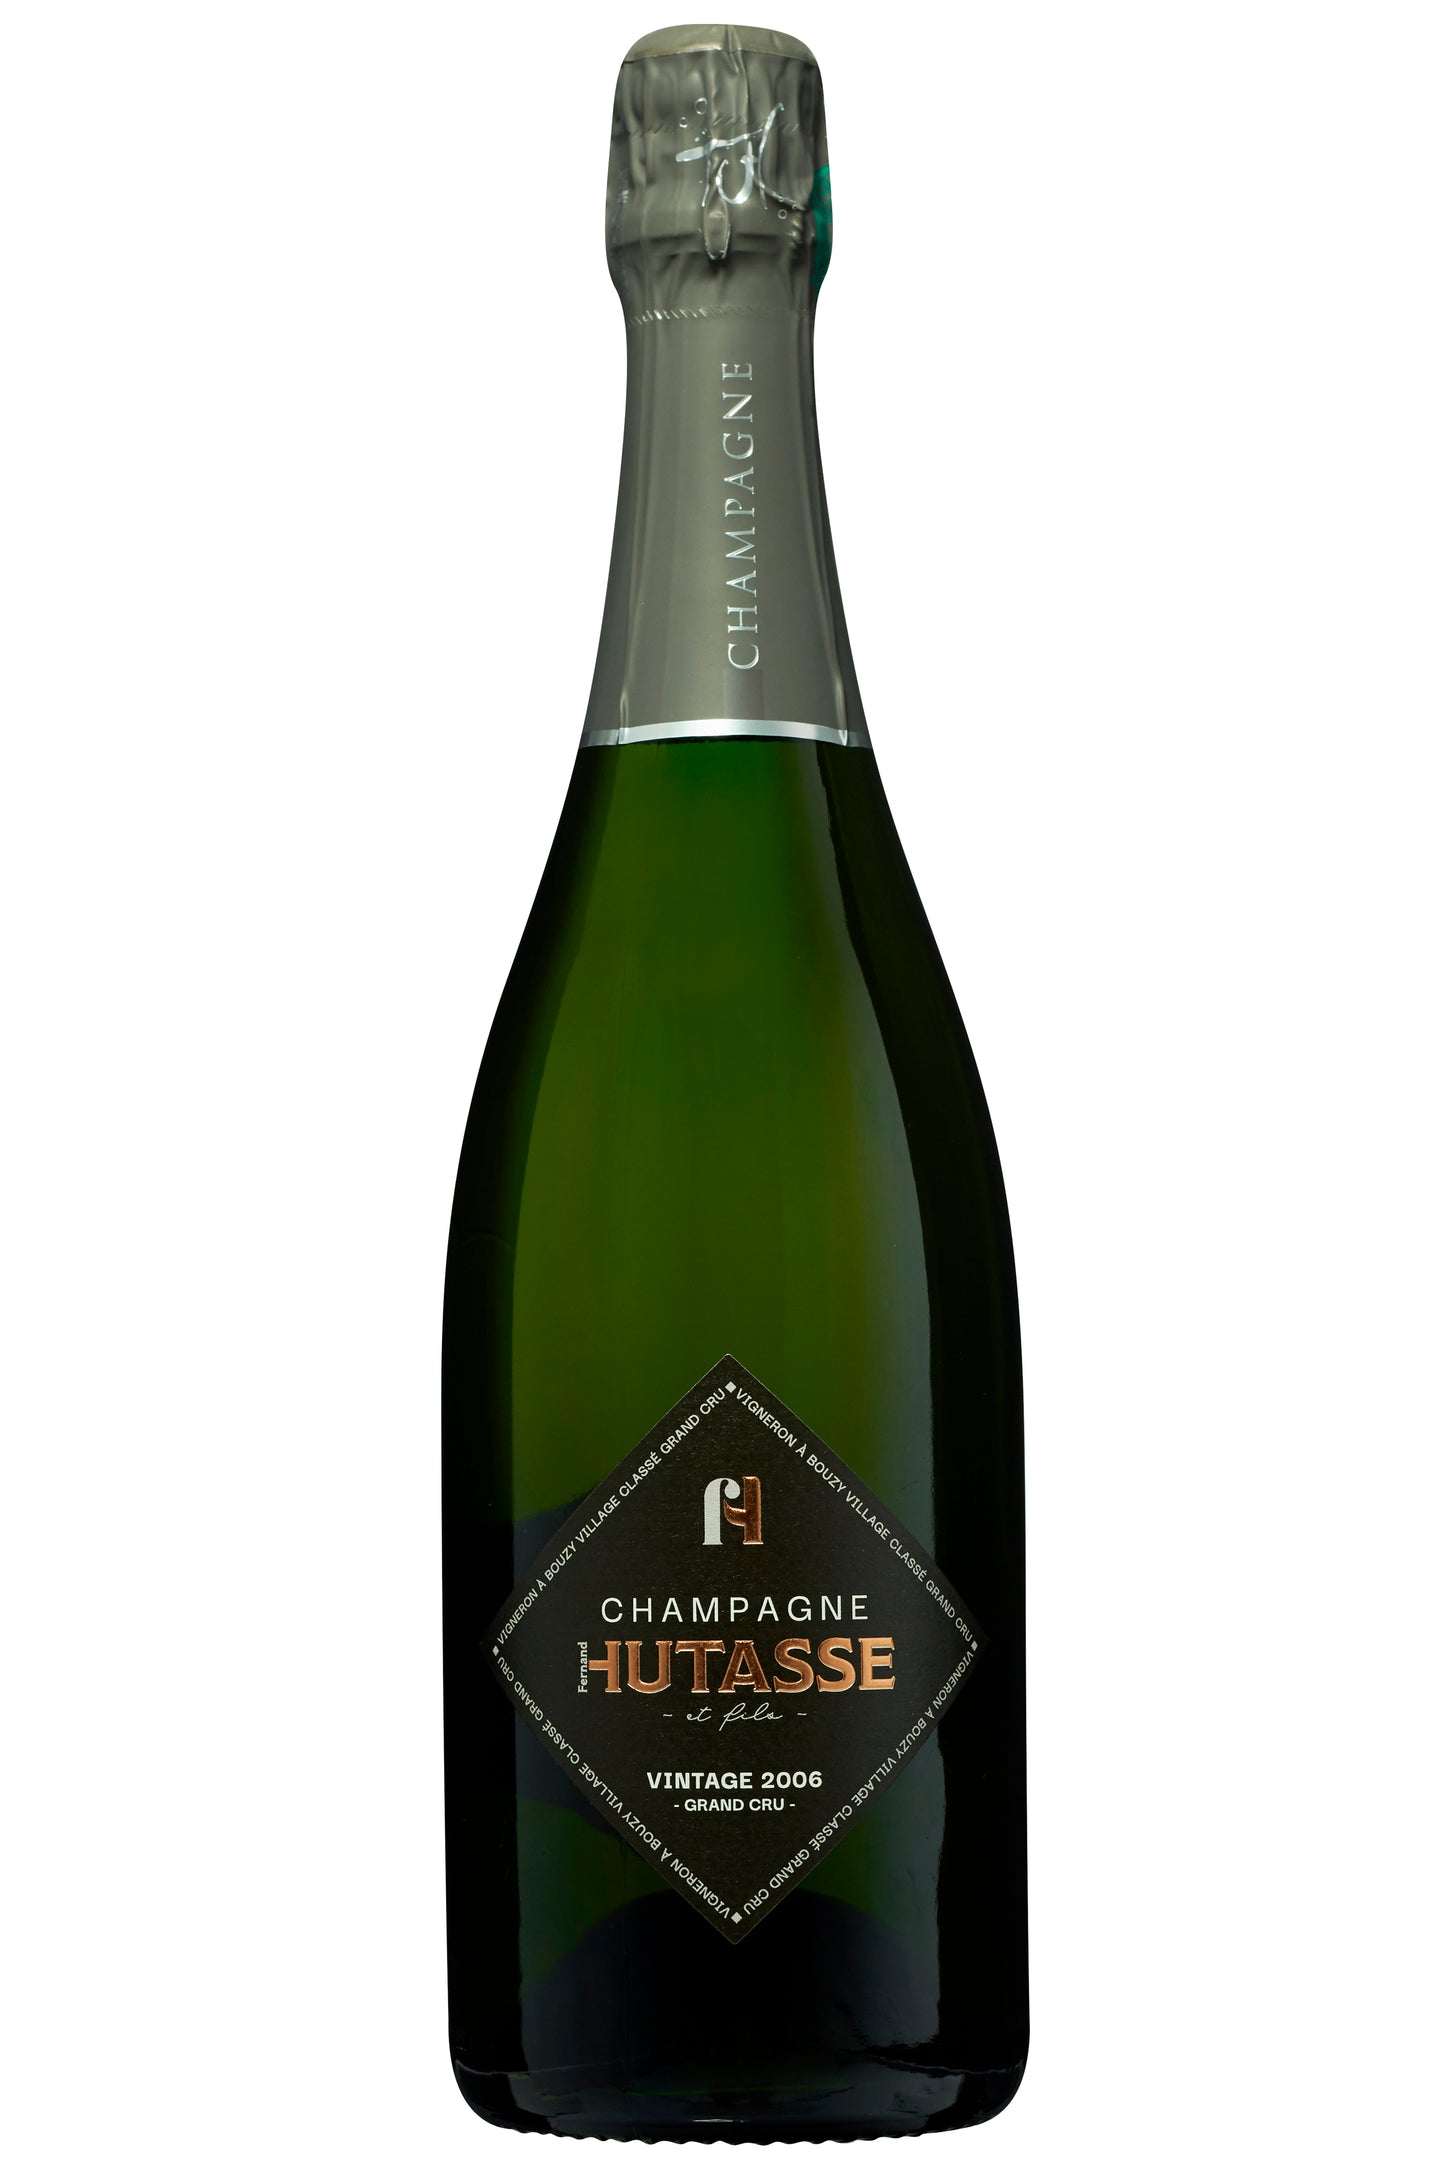 Champagne Hutasse Millésime 2006 Grand Cru